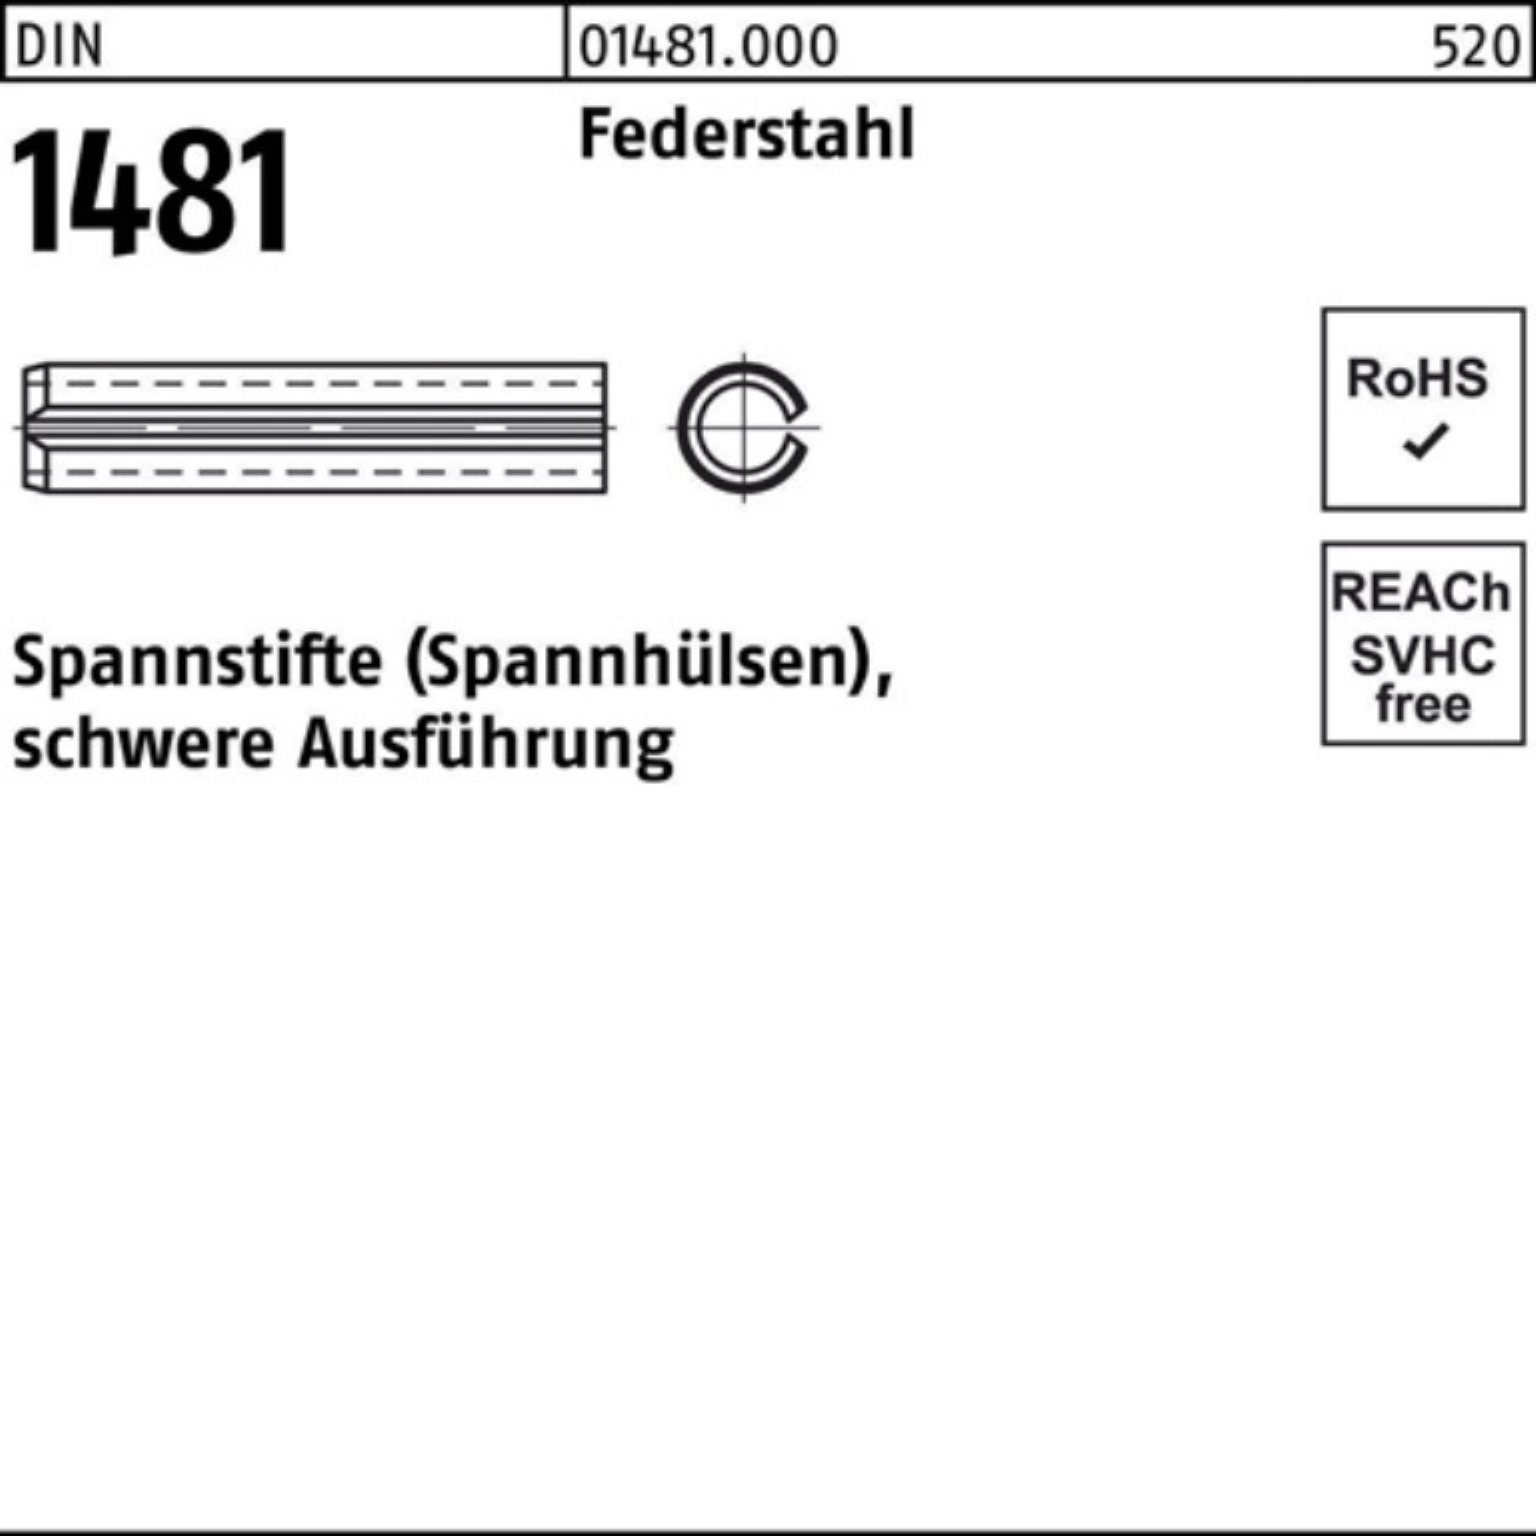 Reyher Spannstift 200er Pack Spannstift 2,5x Ausführung 20 1481 DIN Federstahl schwere